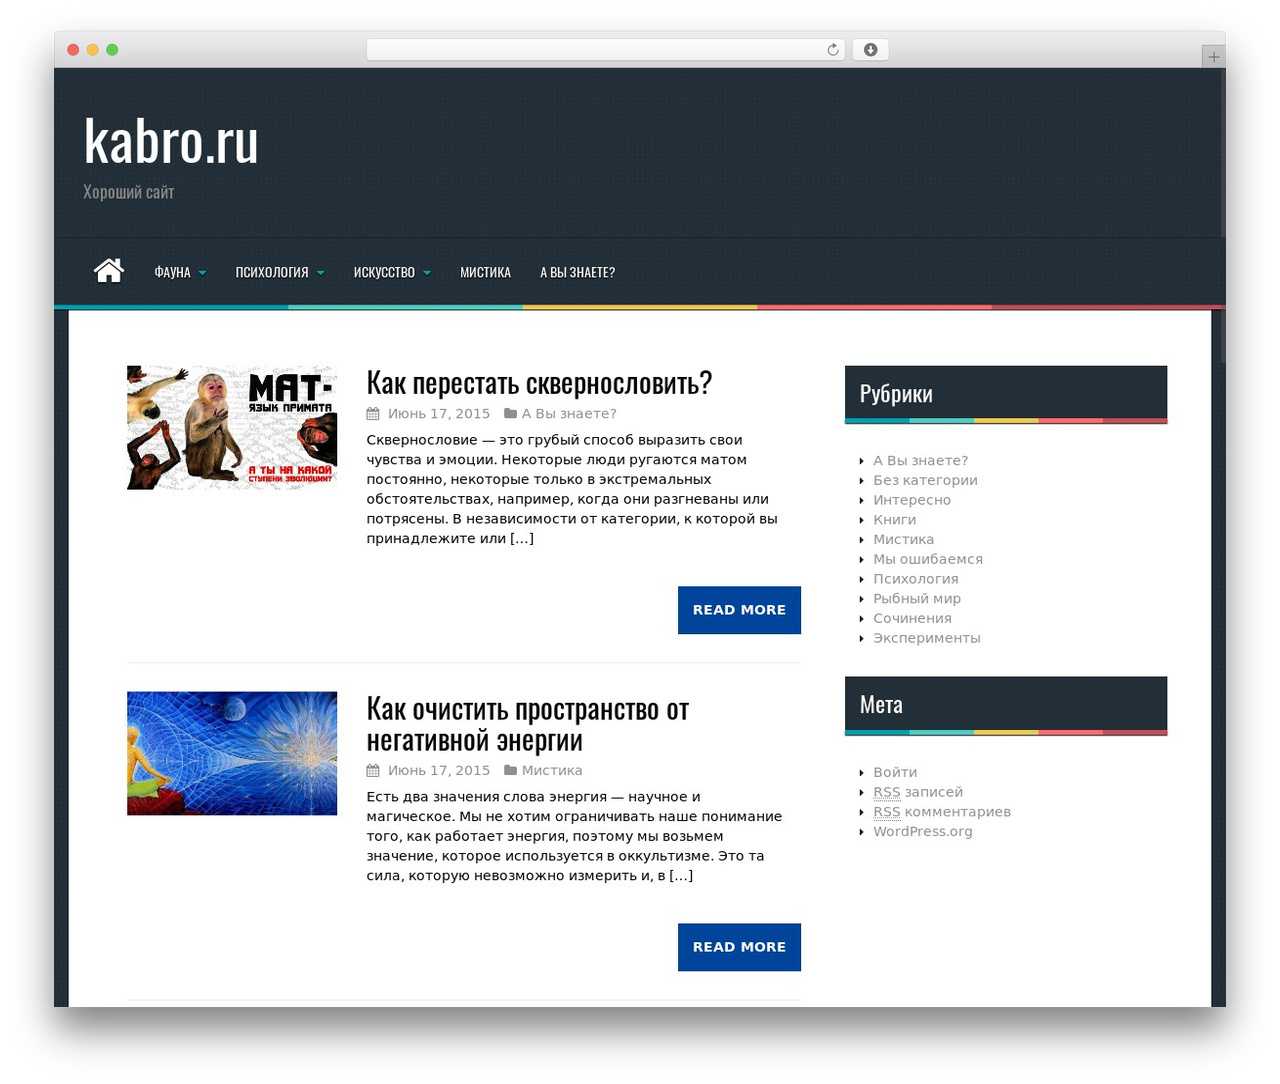 Шаблоны wordpress – скачать бесплатные темы вордпресс на русском языке, премиум theme для wp, адаптивные, каталоги и новостные сайты